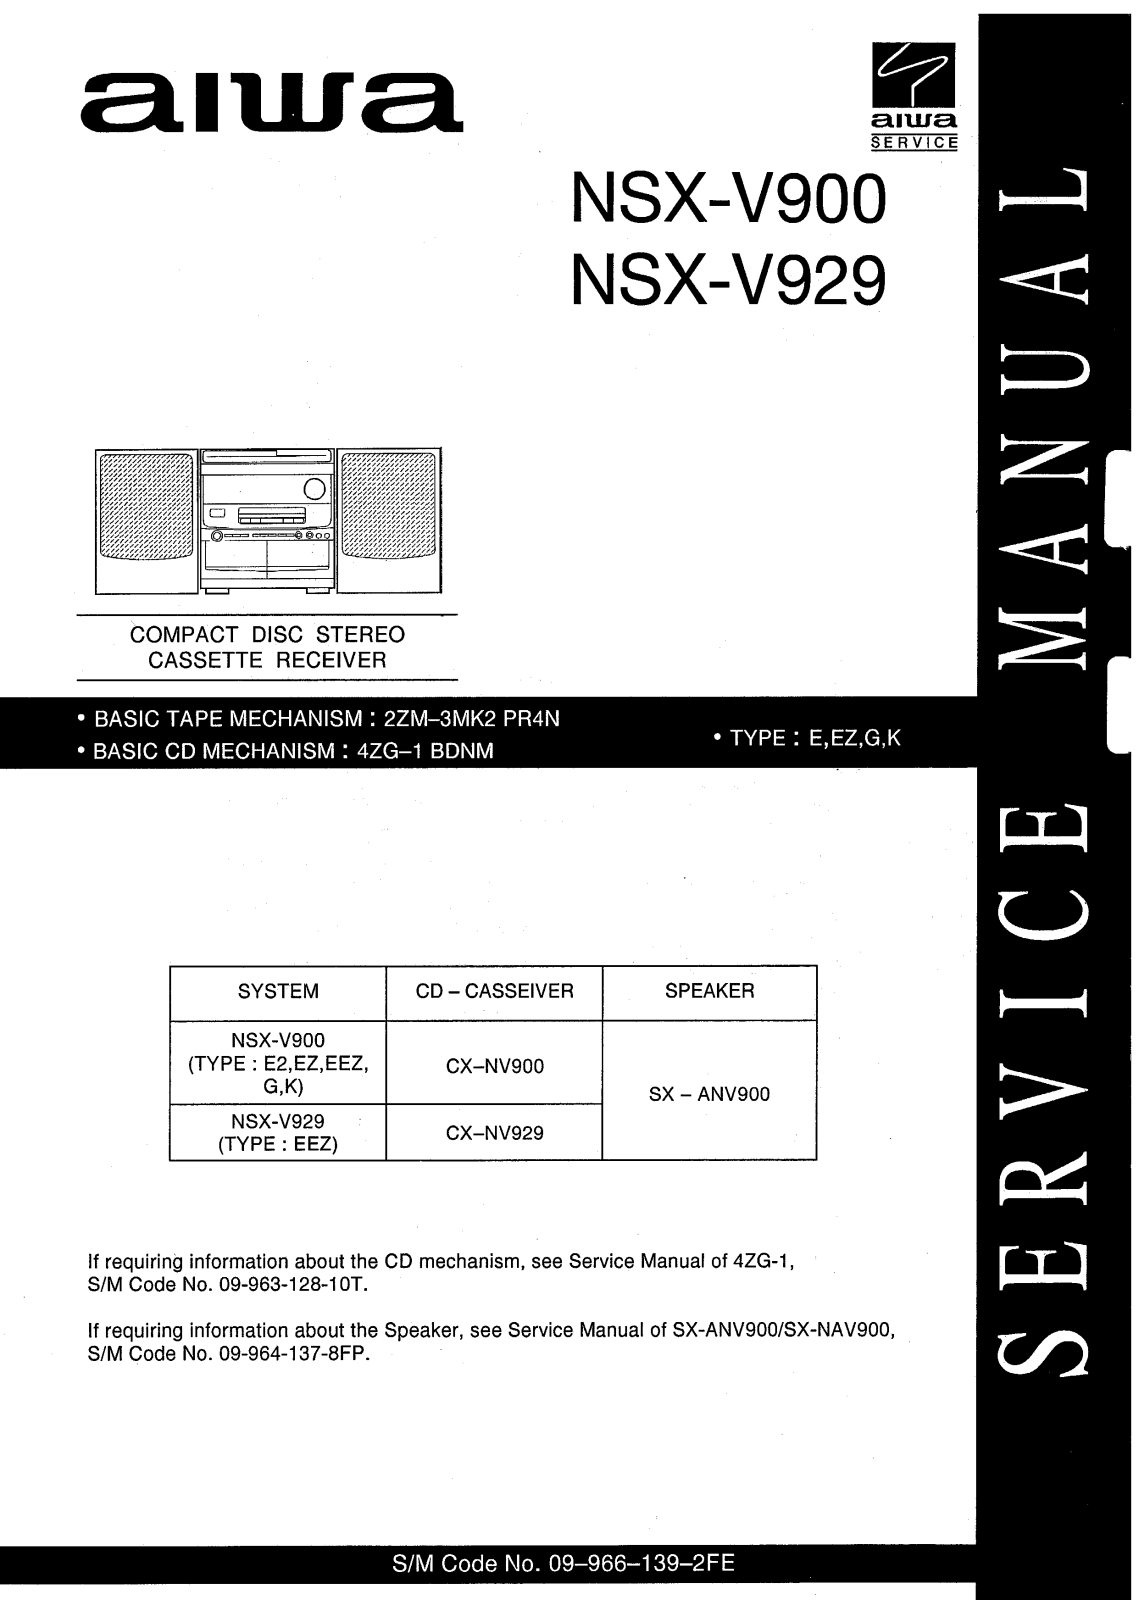 Aiwa NSX-V929, NSX-V900 Service Manual